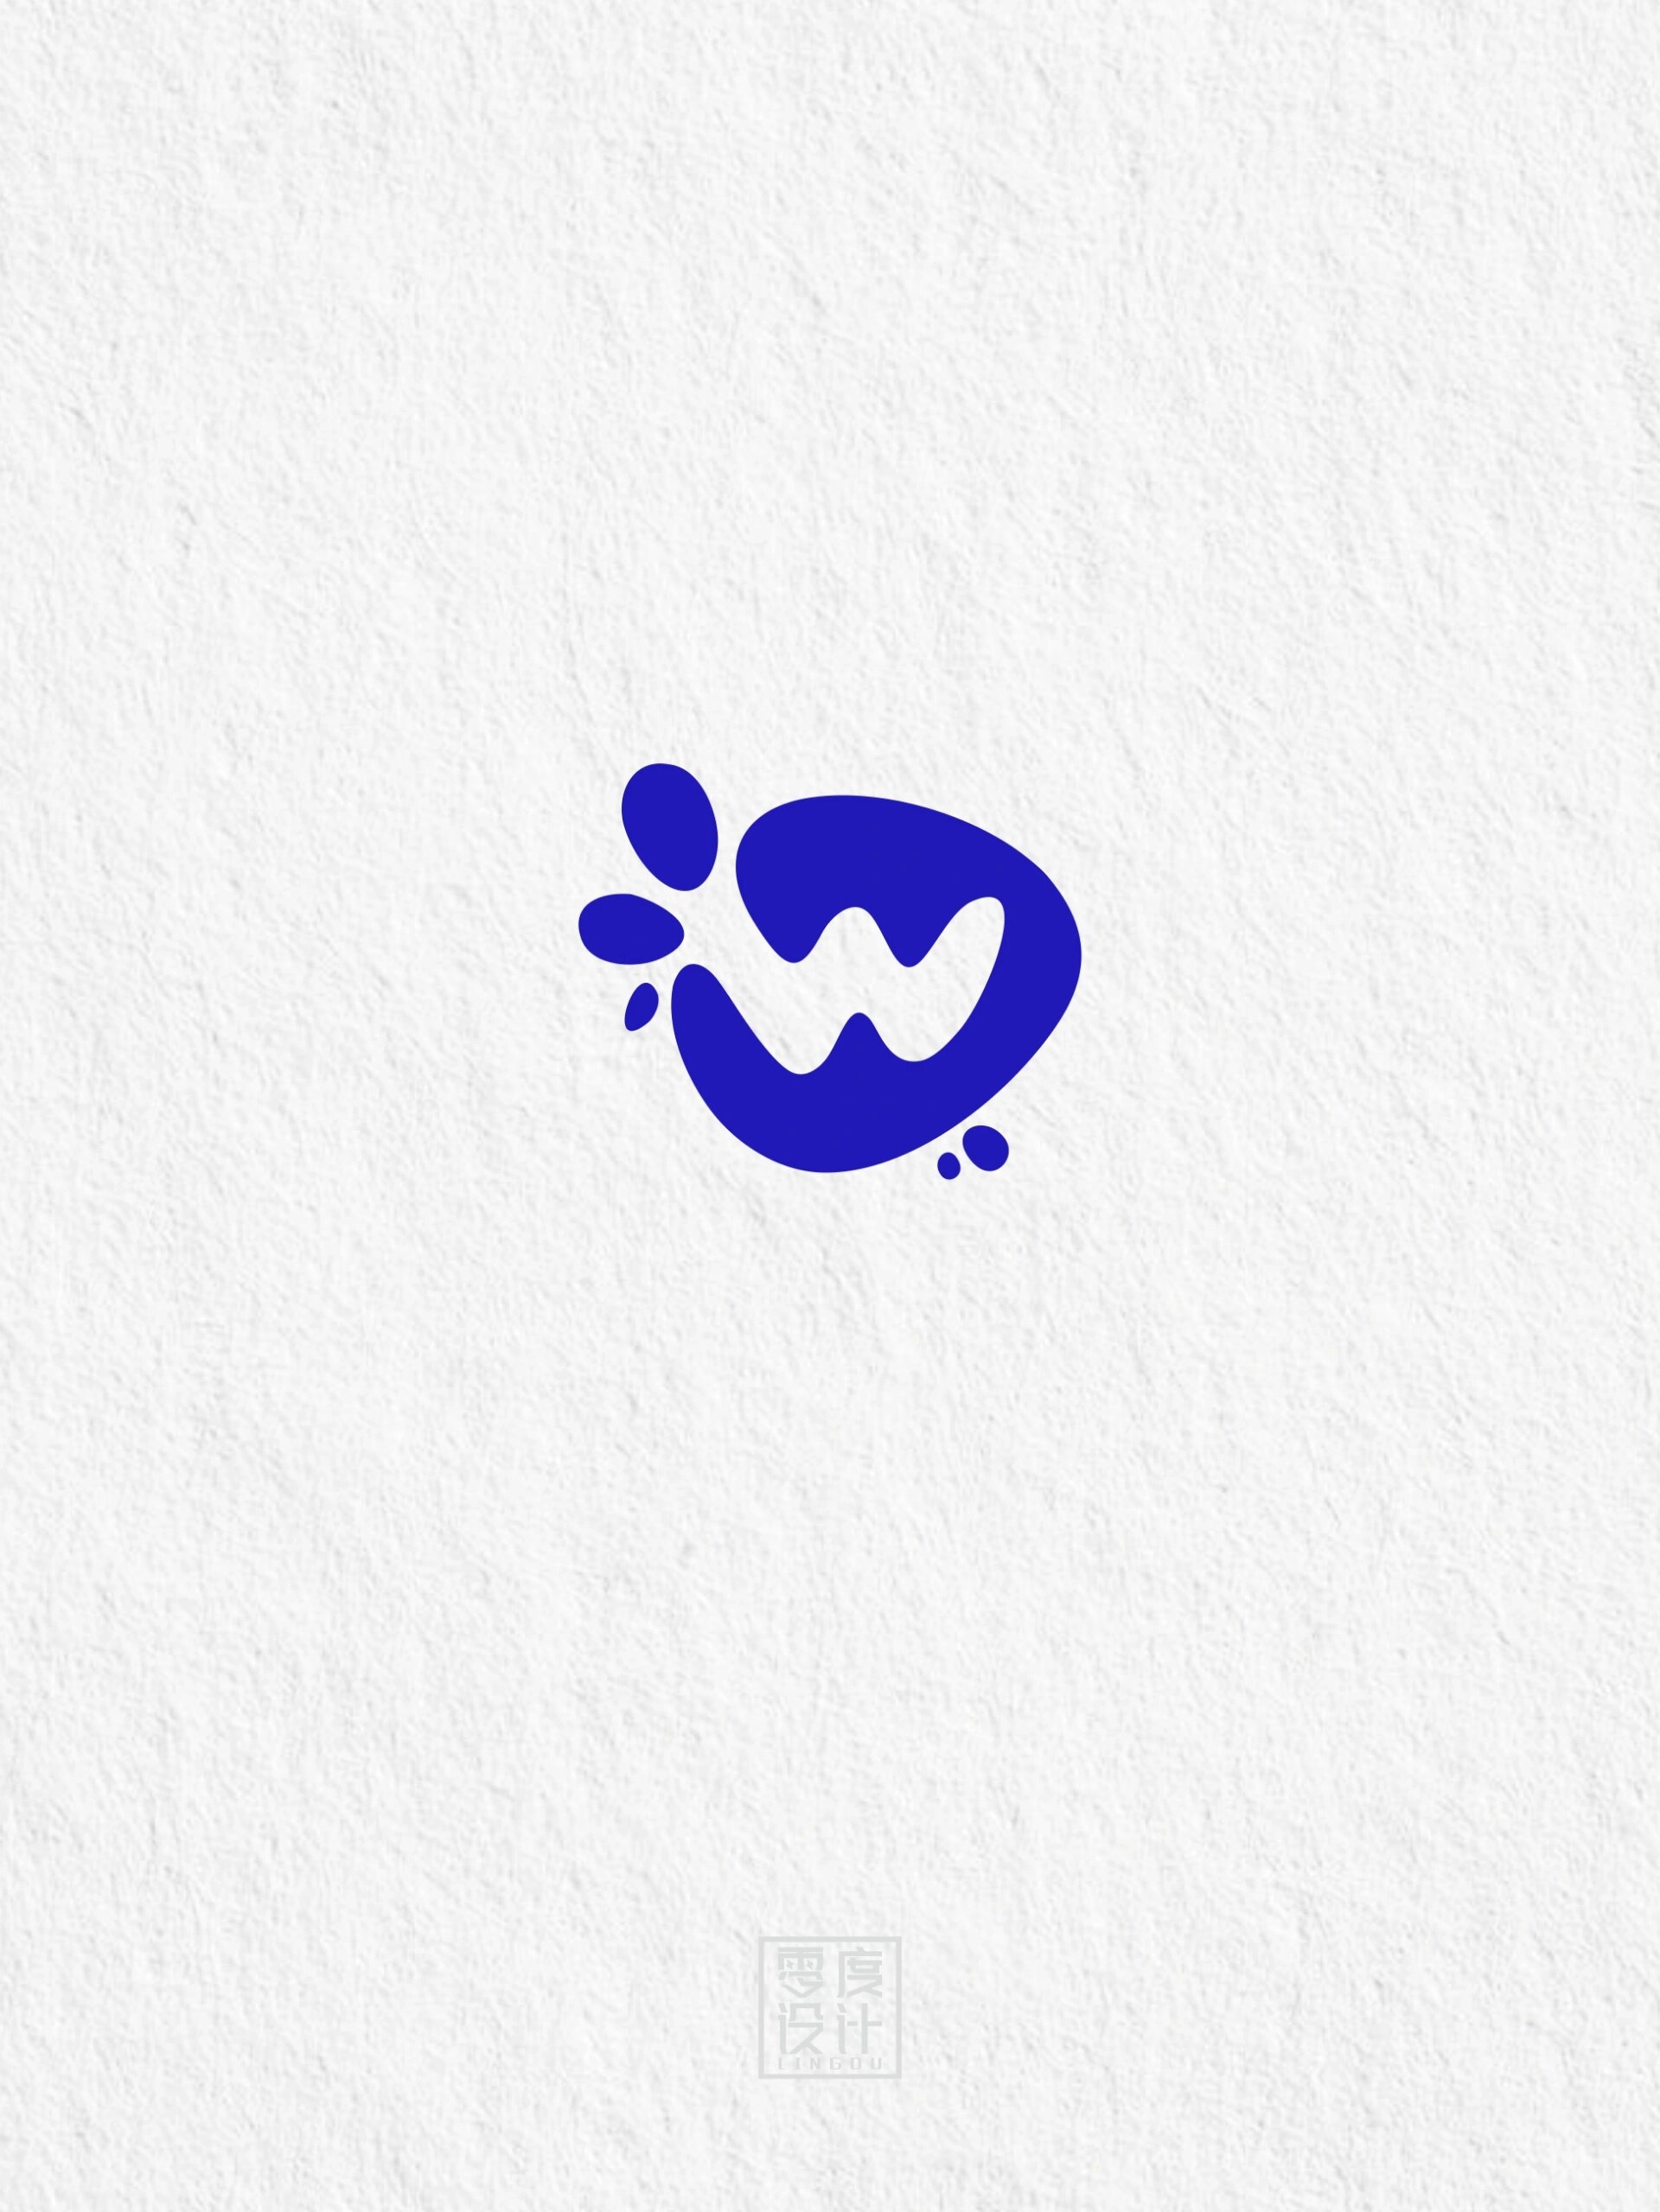 94干货分享/w字母的logo设计